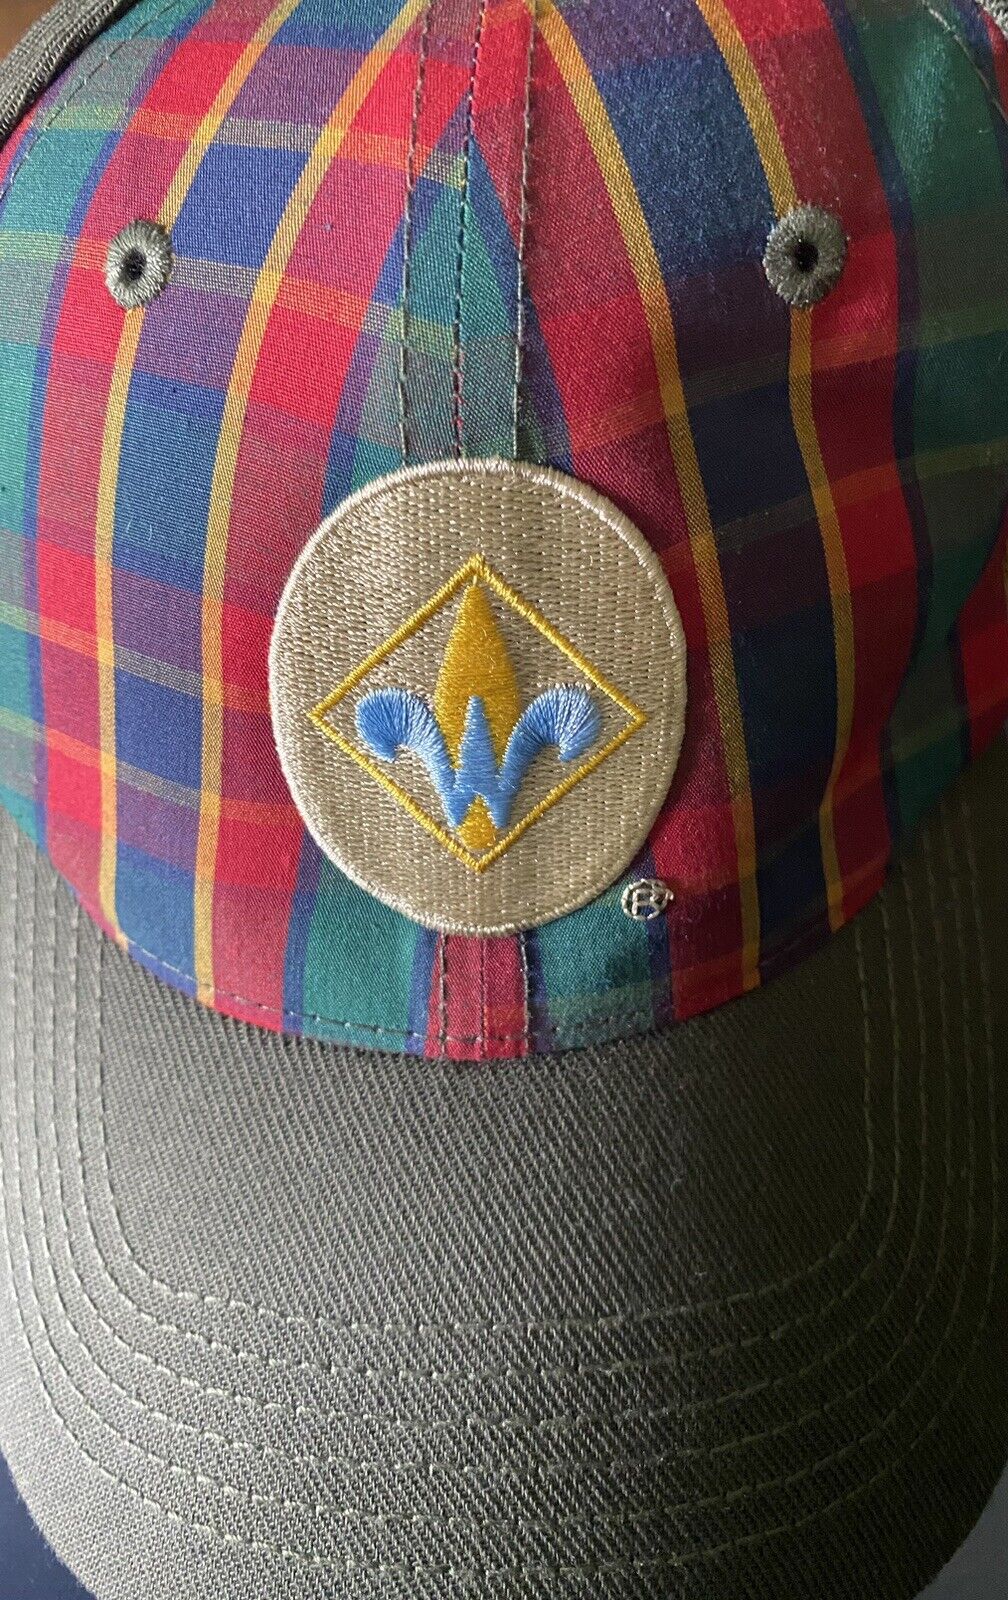 Boy Scouts Hat Webelos Cub Scouts BSA Hat, Cap Flex Fitted Plaid